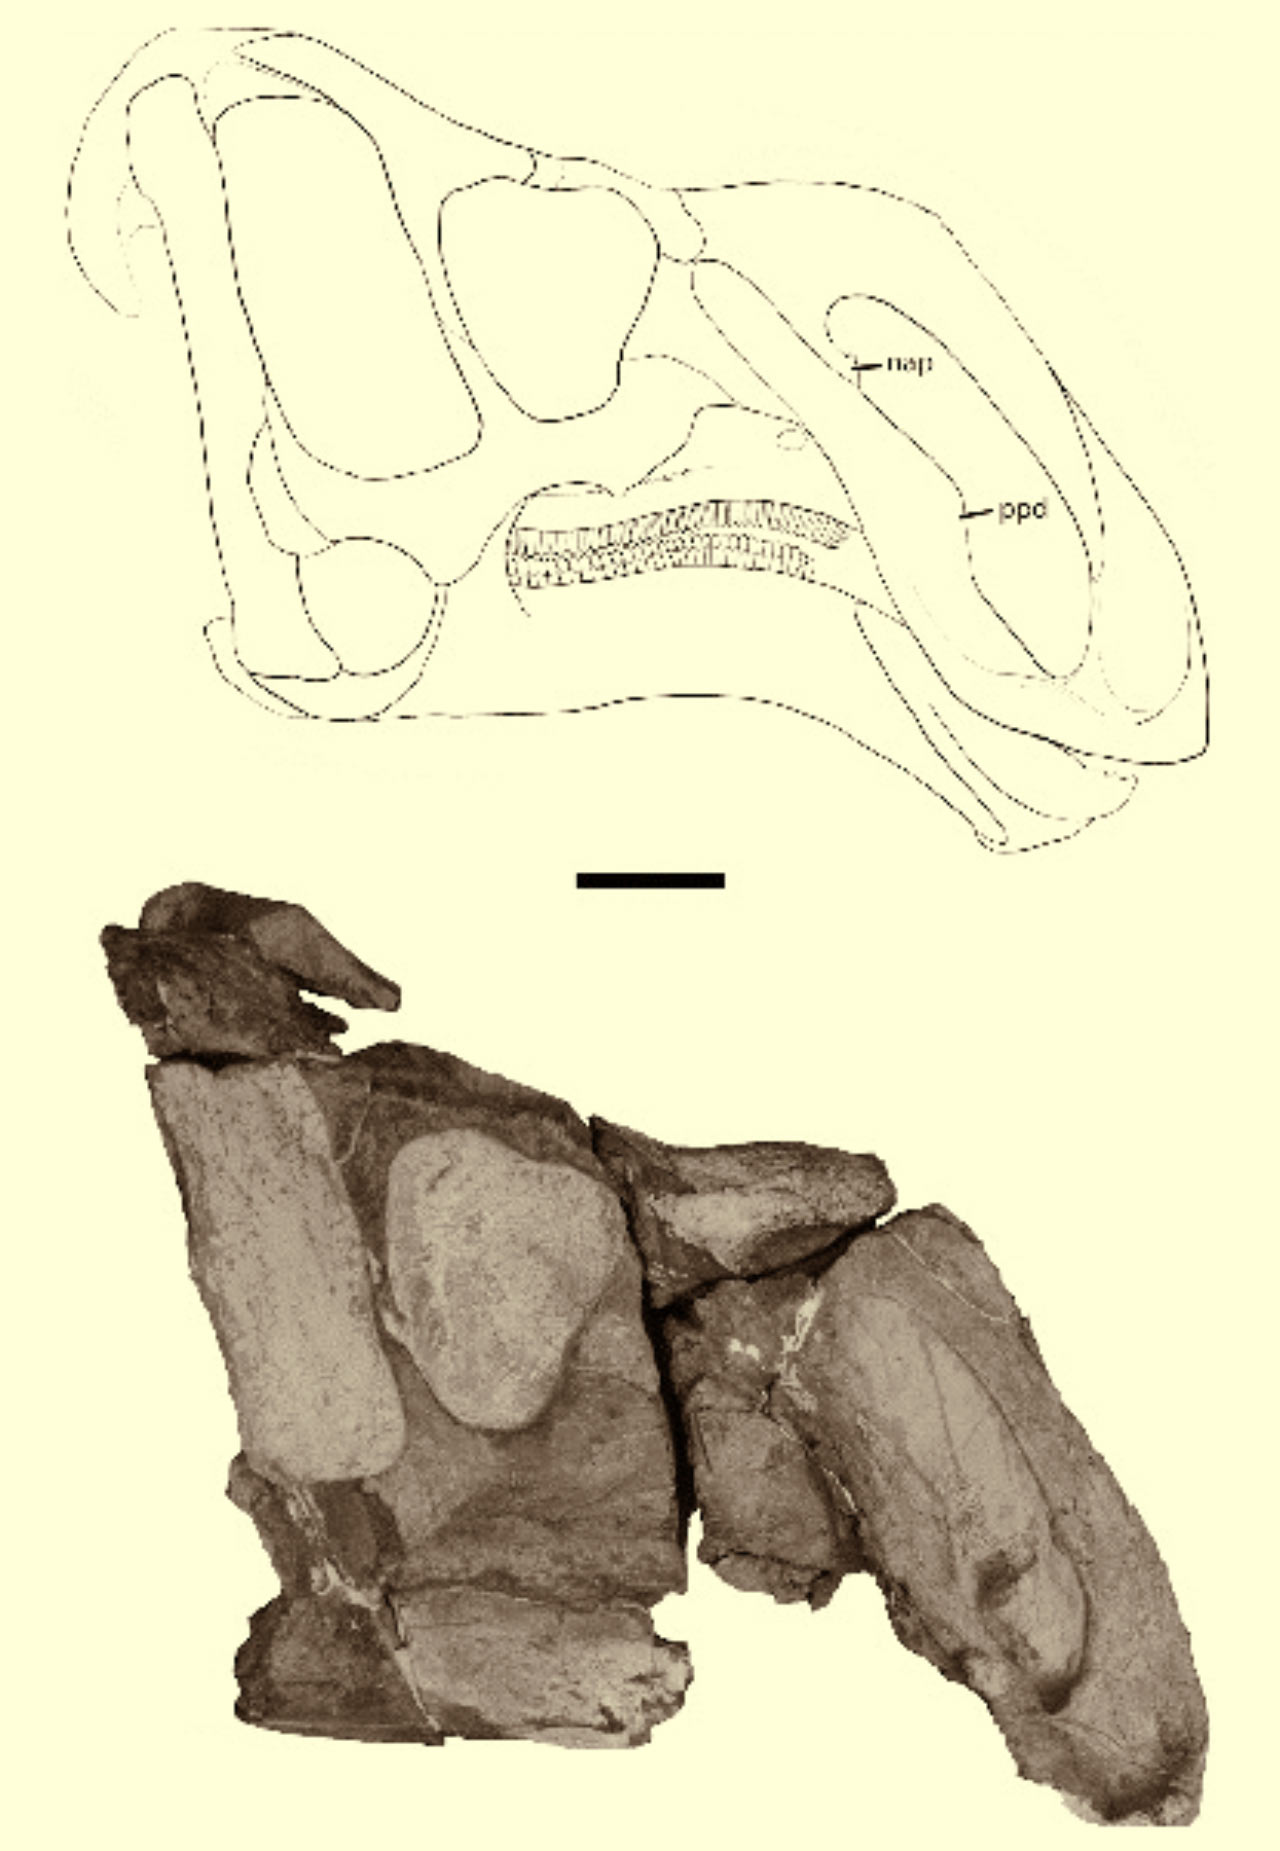 中部发现大鼻子恐龙--鼻王龙 - 中国化石网